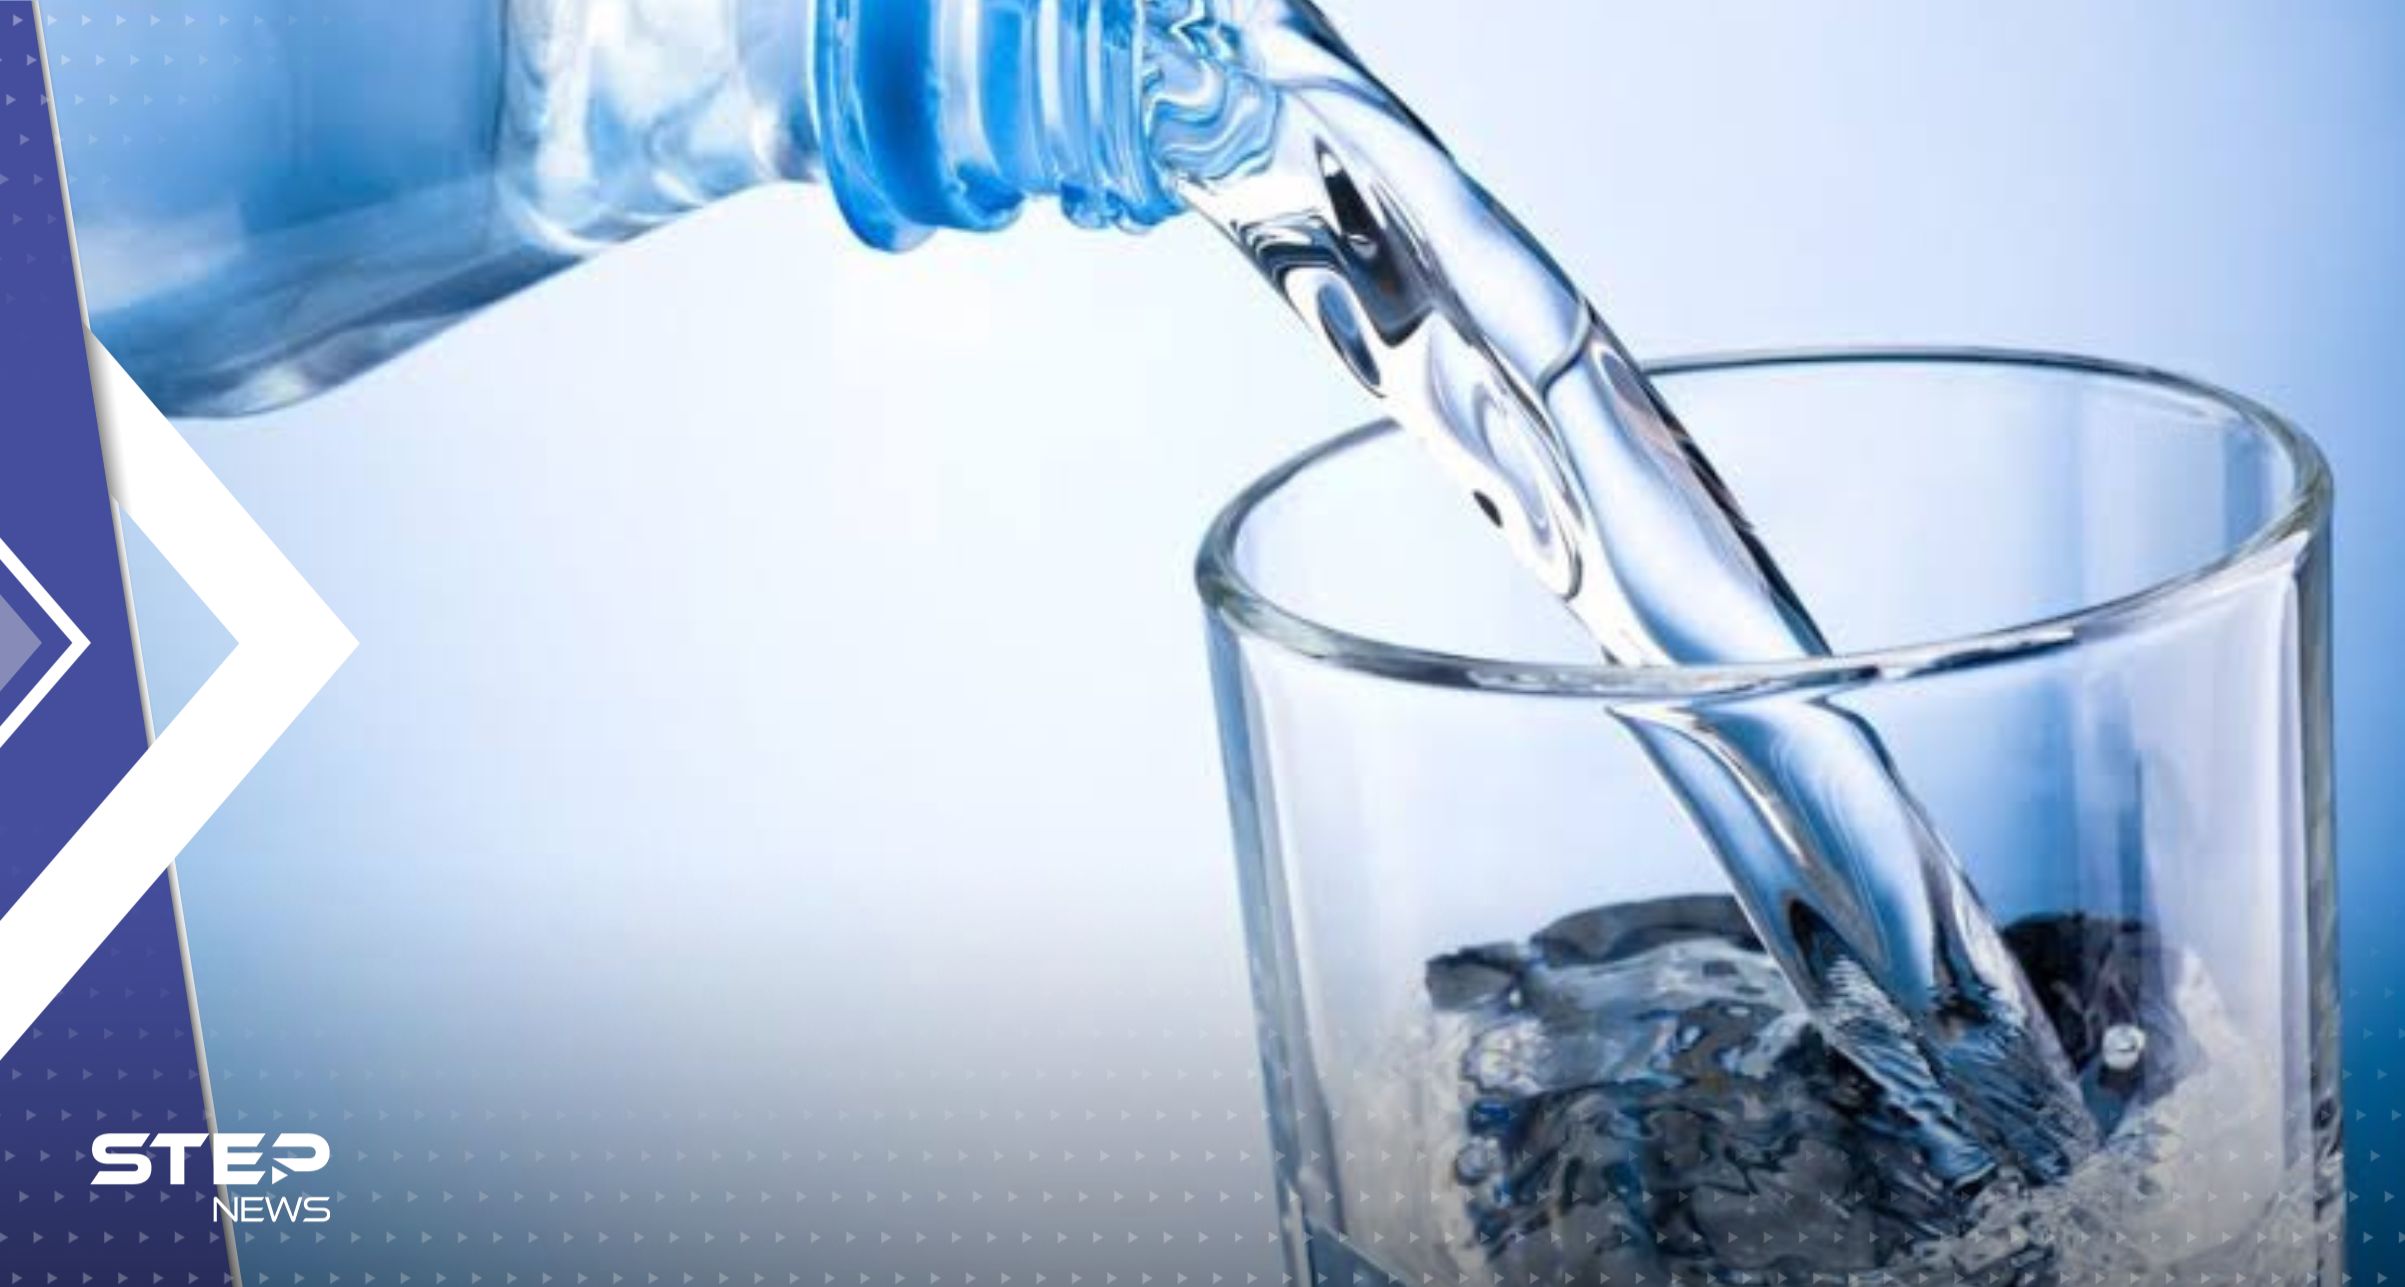 امرأة تفقد حياتها بعد شربها 2 لتر من المياه في 20 دقيقة.. وتقرير يوضح التفاصيل